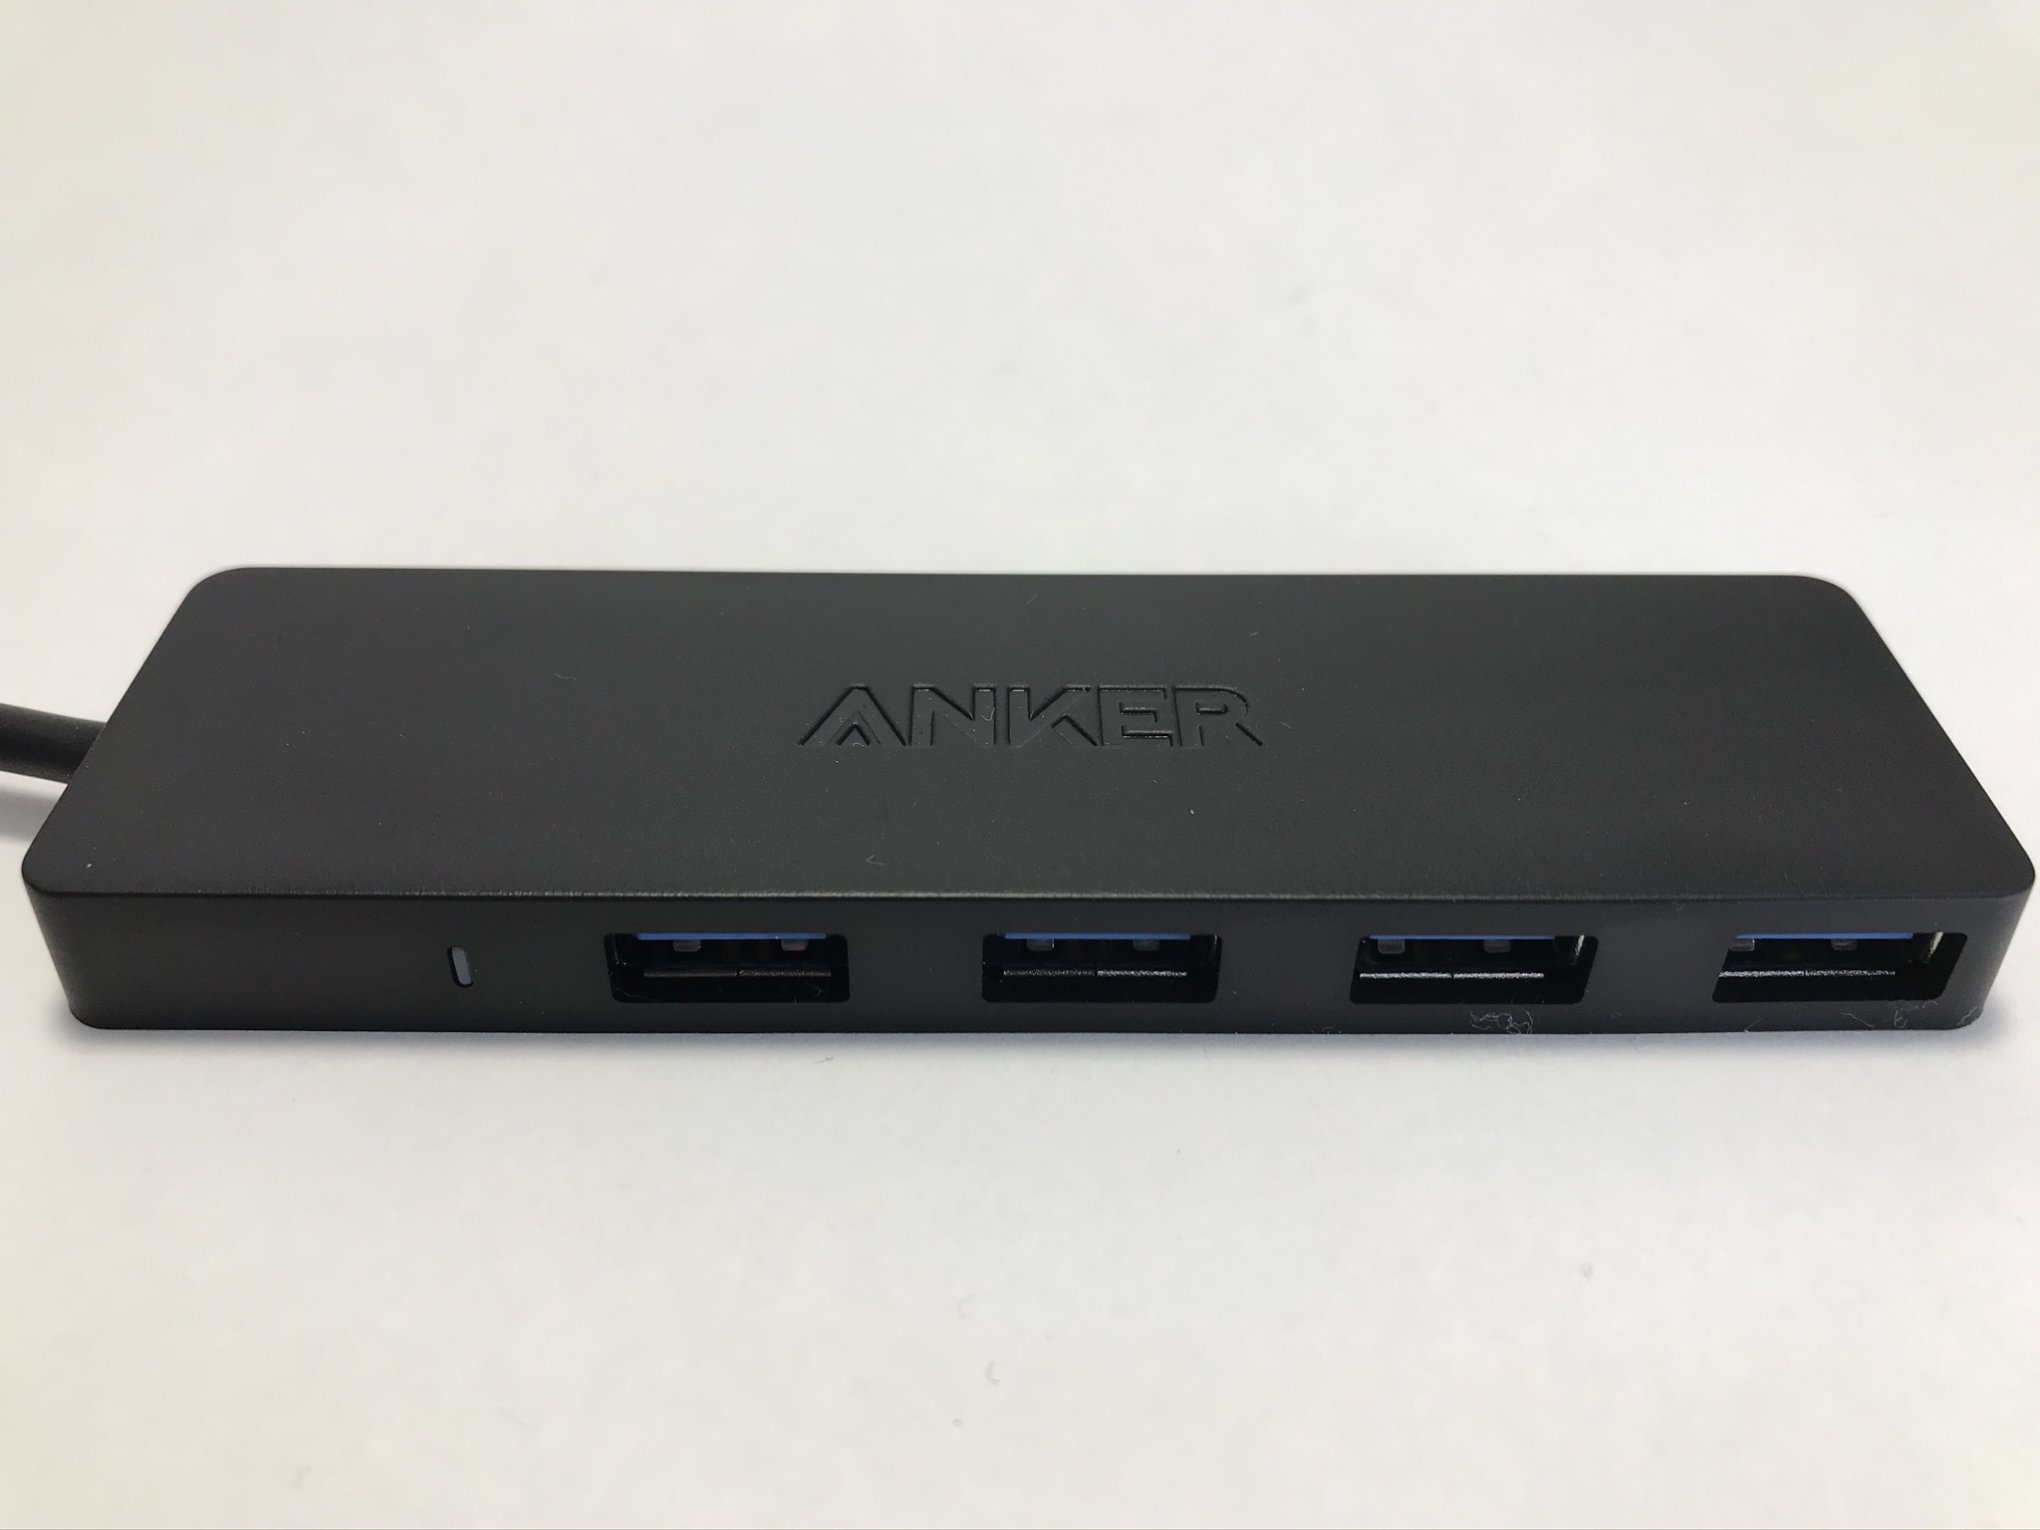 Anker USB3.0 ウルトラスリム 4ポートハブ 】スイッチで使える携帯に便利なアンカー製HUBをレビュー | ゲーミングガジェット.com